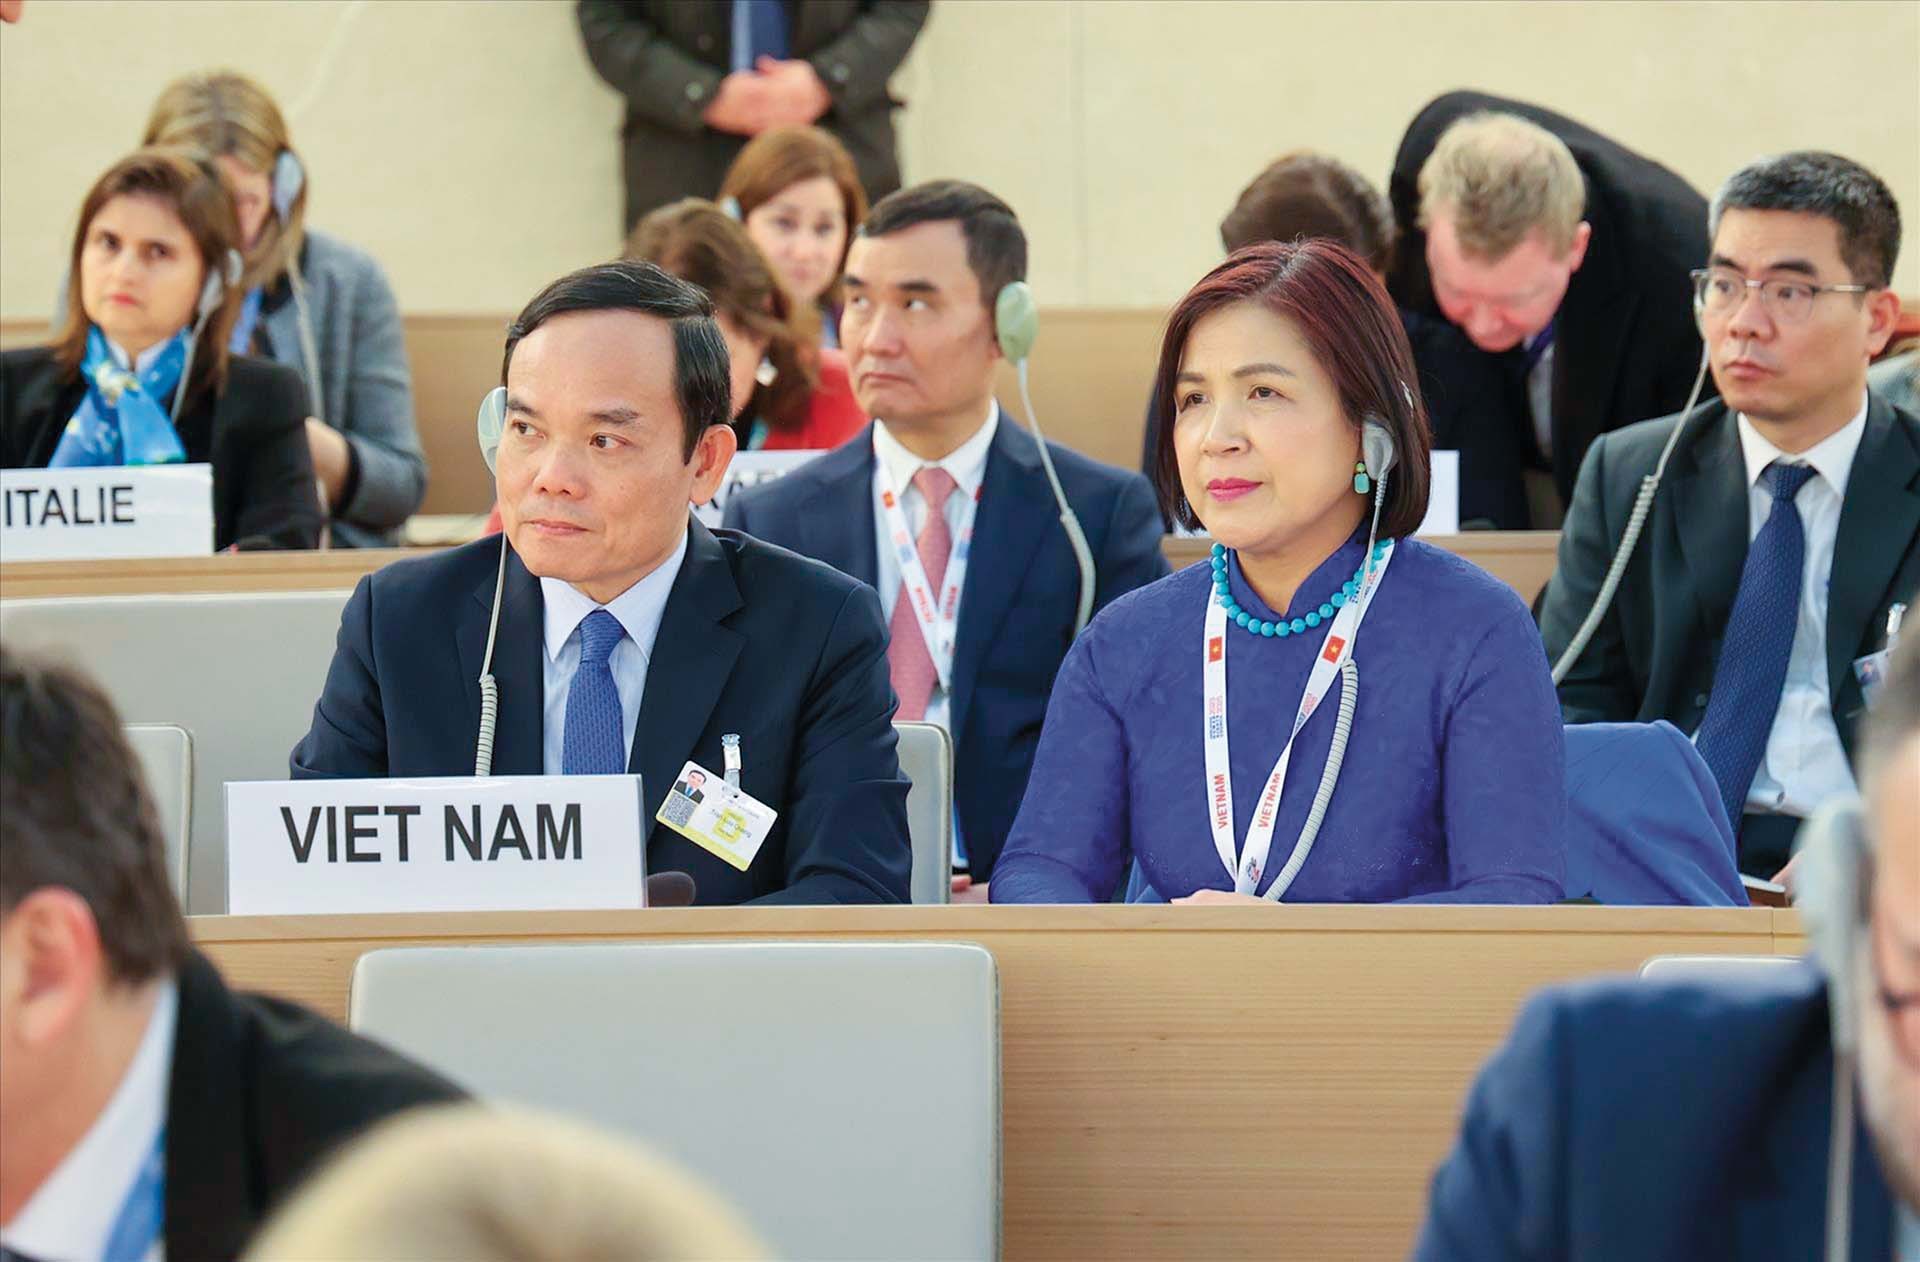 Phó Thủ tướng Trần Lưu Quang tham dự Khóa họp lần thứ 52 của Hội đồng Nhân quyền Liên hợp quốc tại Geneva, Thụy Sỹ, tháng 2/2023.  (Nguồn: TTXVN)